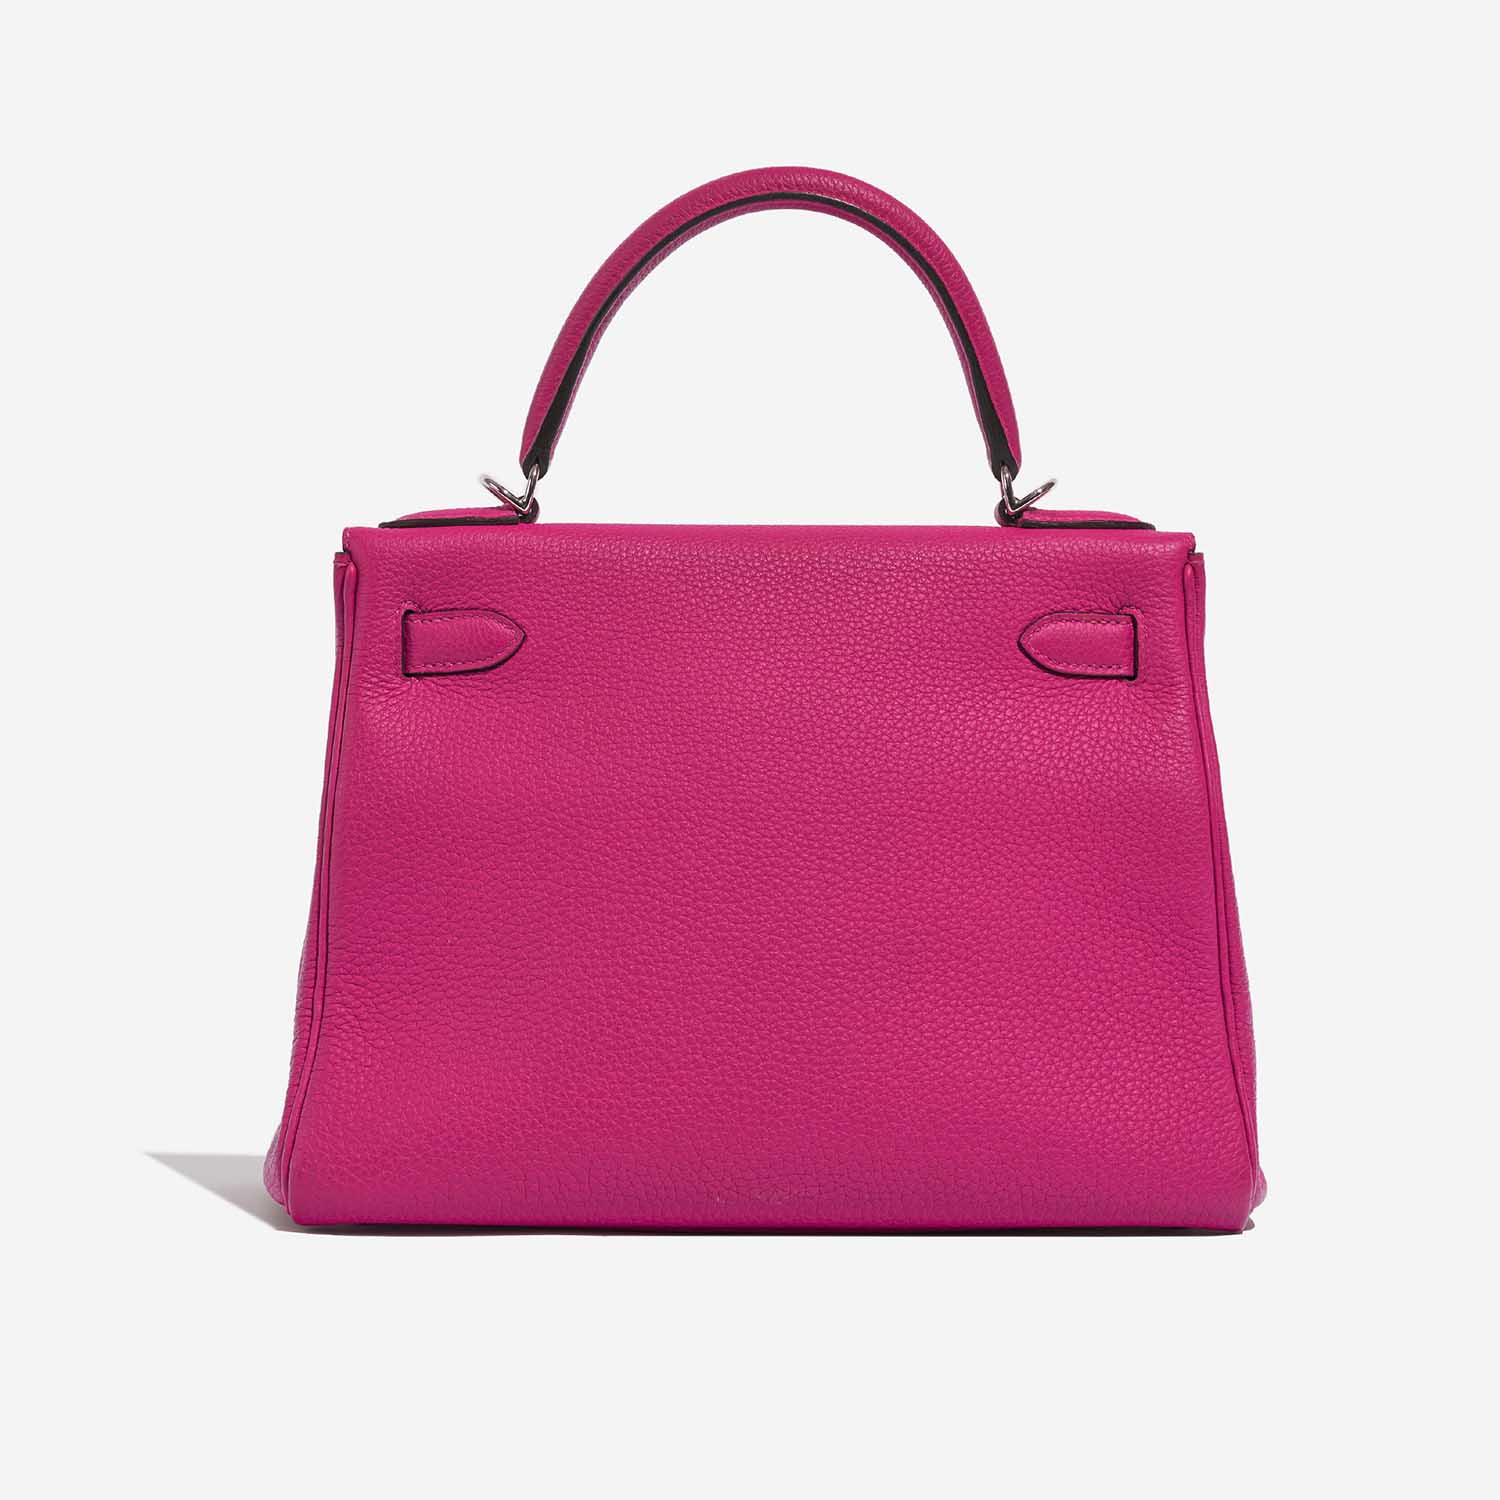 Hermès Kelly 28 RosePourpre 5B S | Verkaufen Sie Ihre Designertasche auf Saclab.com